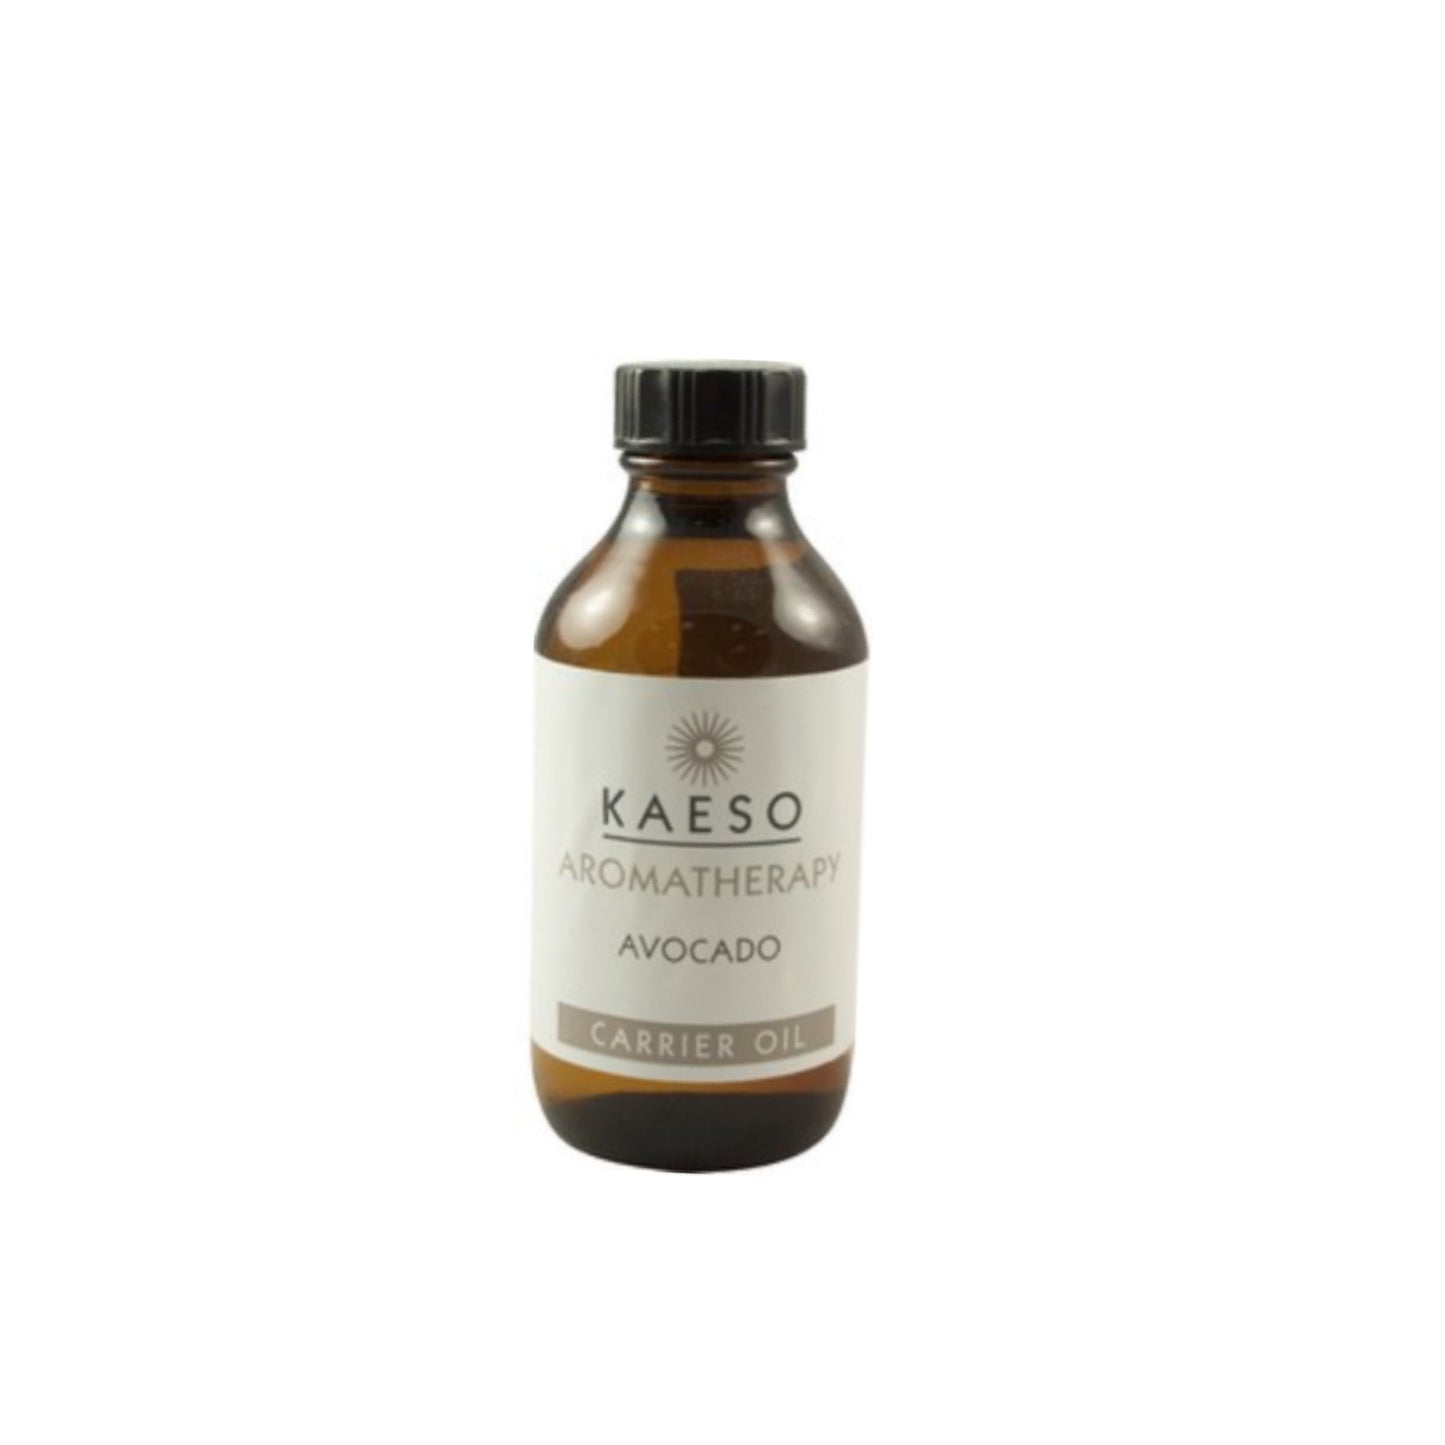 Kaeso Aromatherapy - Advocado Carrier Oil (100ml)